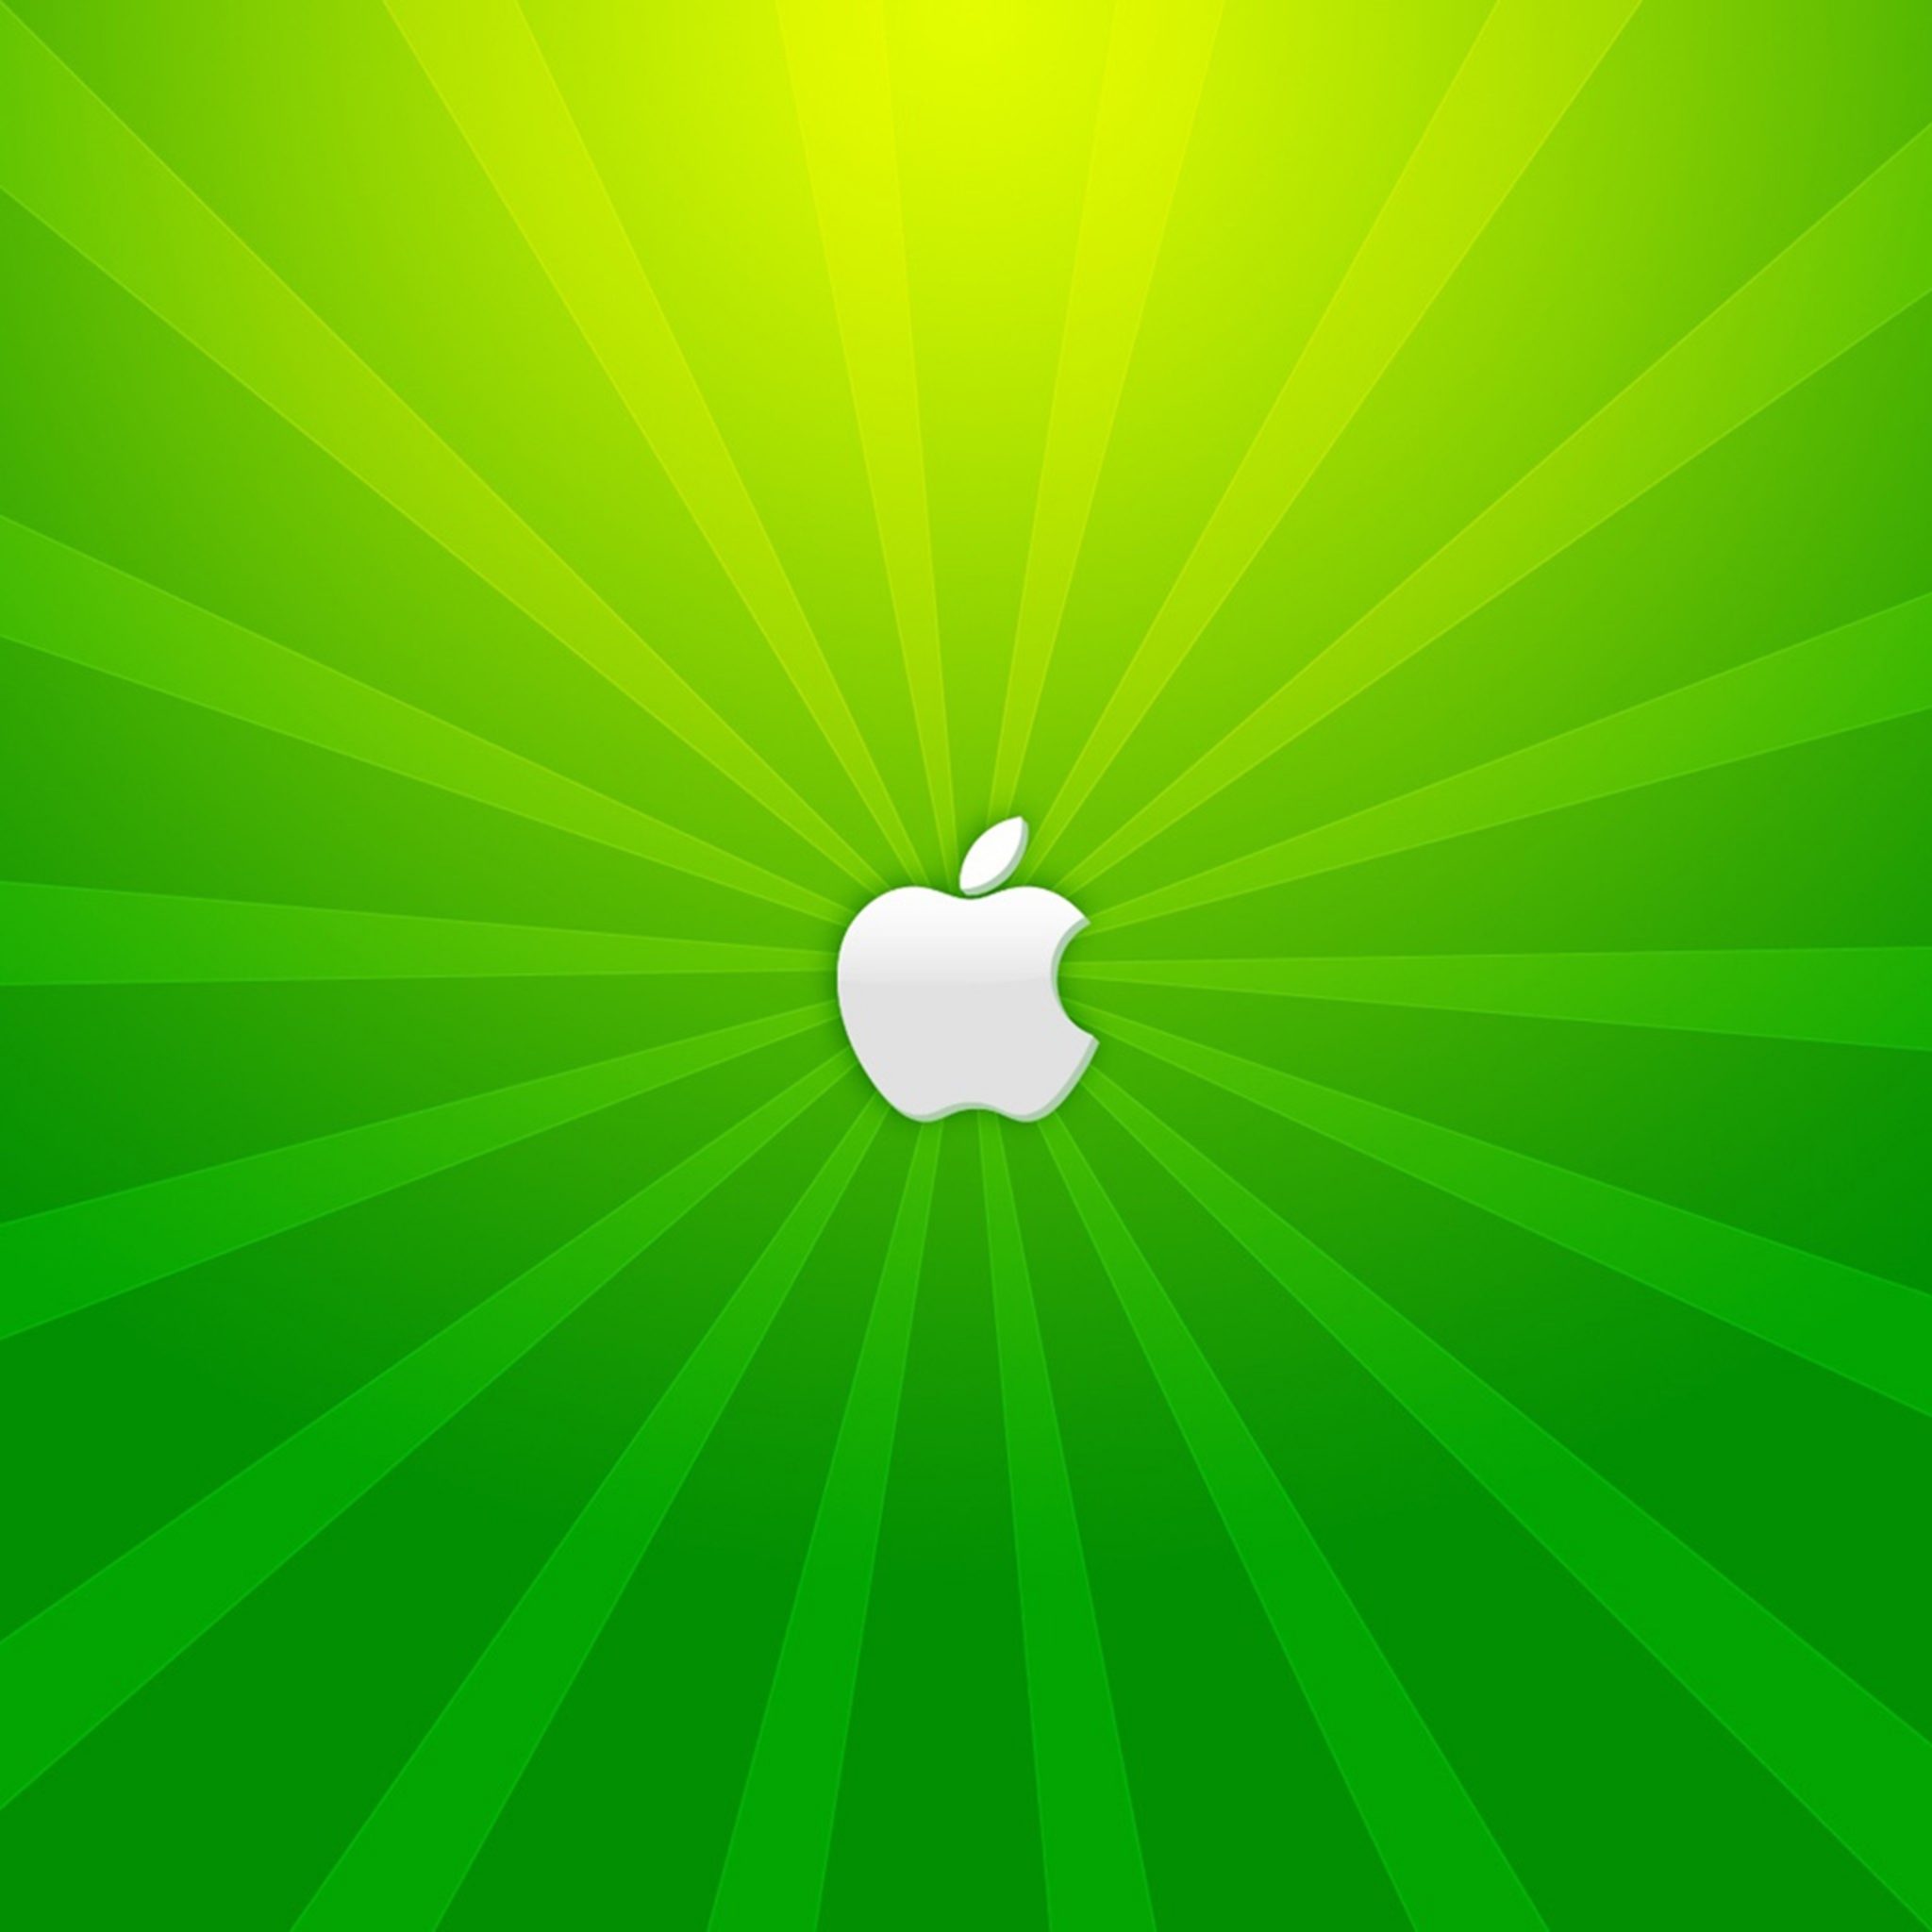 2048x2048 wallpapers iPad retina Apple Green Shine Ipad Wallpaper 2048x2048 pixels resolution